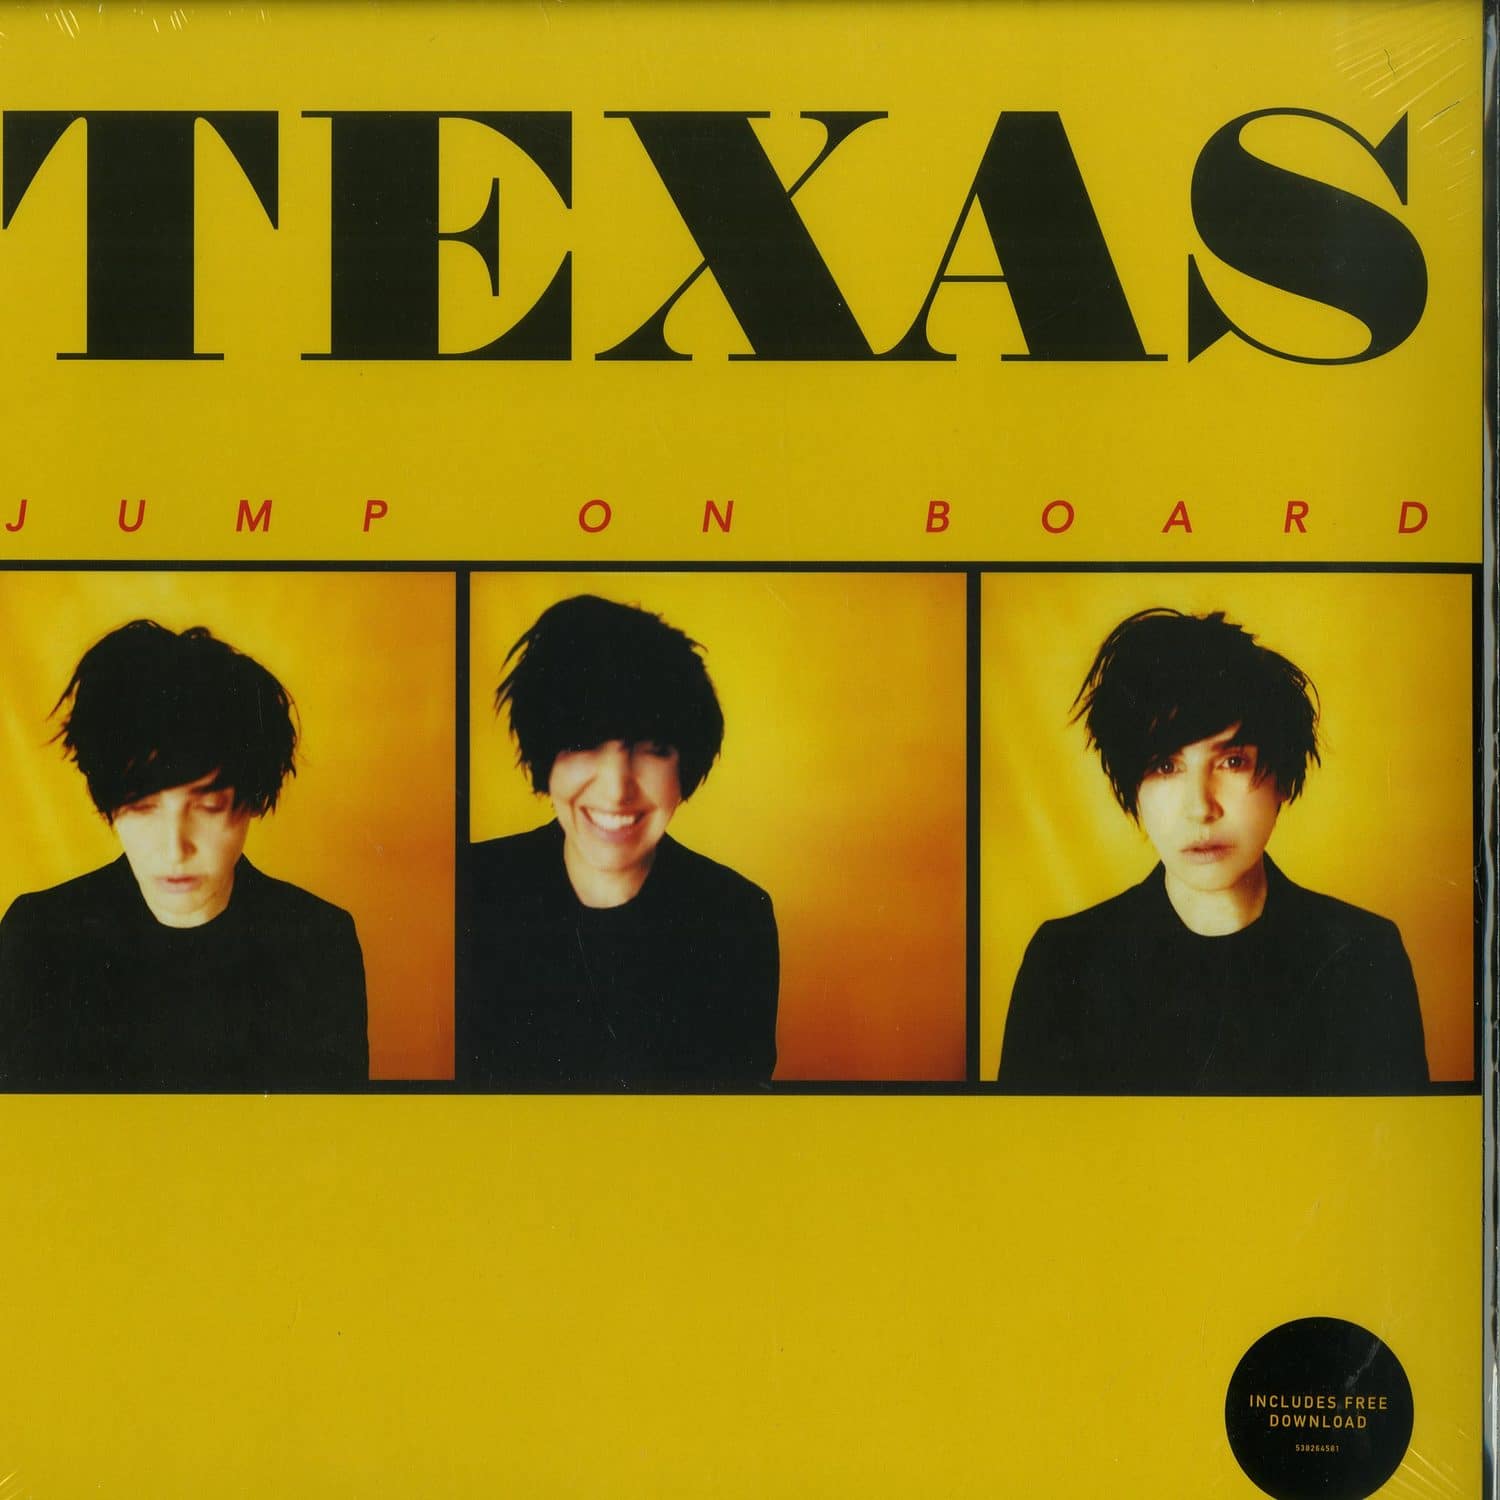 Texas - JUMP ON BOARD 